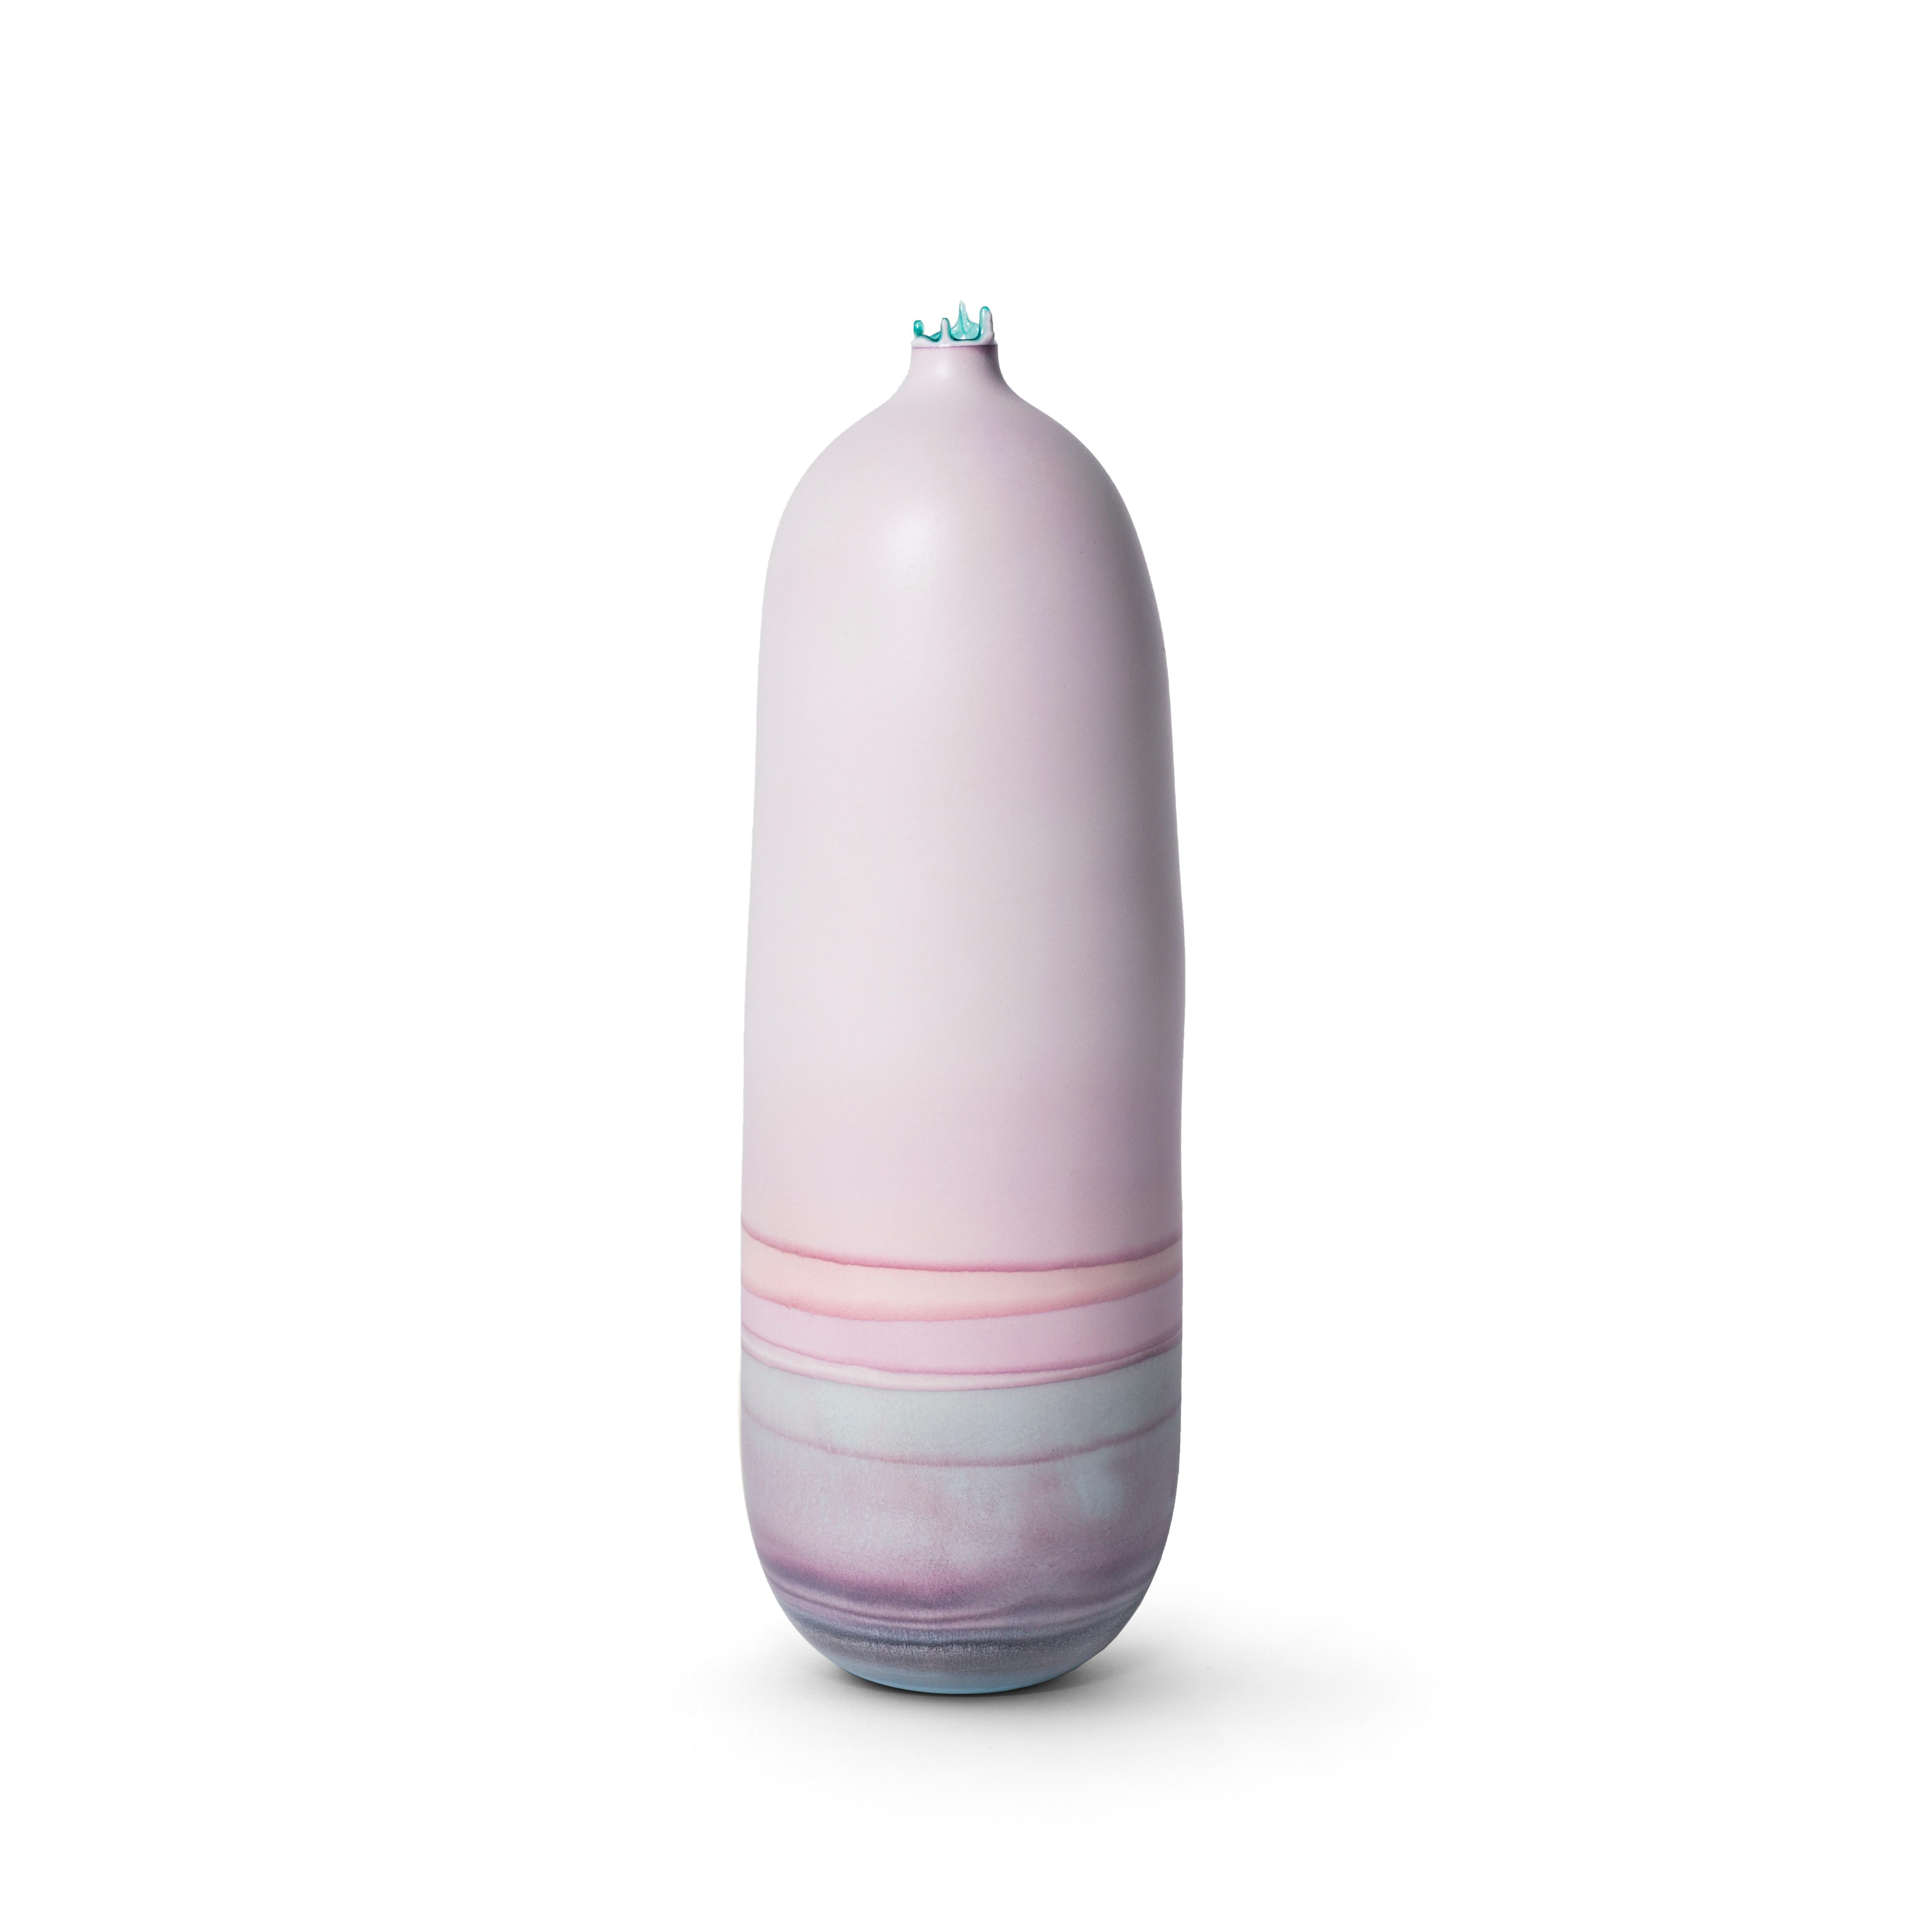 Fliederfarbene Ombre-Venus-Vase von Elyse Graham
Abmessungen: B 14 x T 14 x H 38 cm.
MATERIAL: Gips, Harz.
Geformt, gefärbt und von Hand in LA fertiggestellt. Personalisierung
Verfügbar.
Alle Stücke werden auf Bestellung gefertigt.

Diese